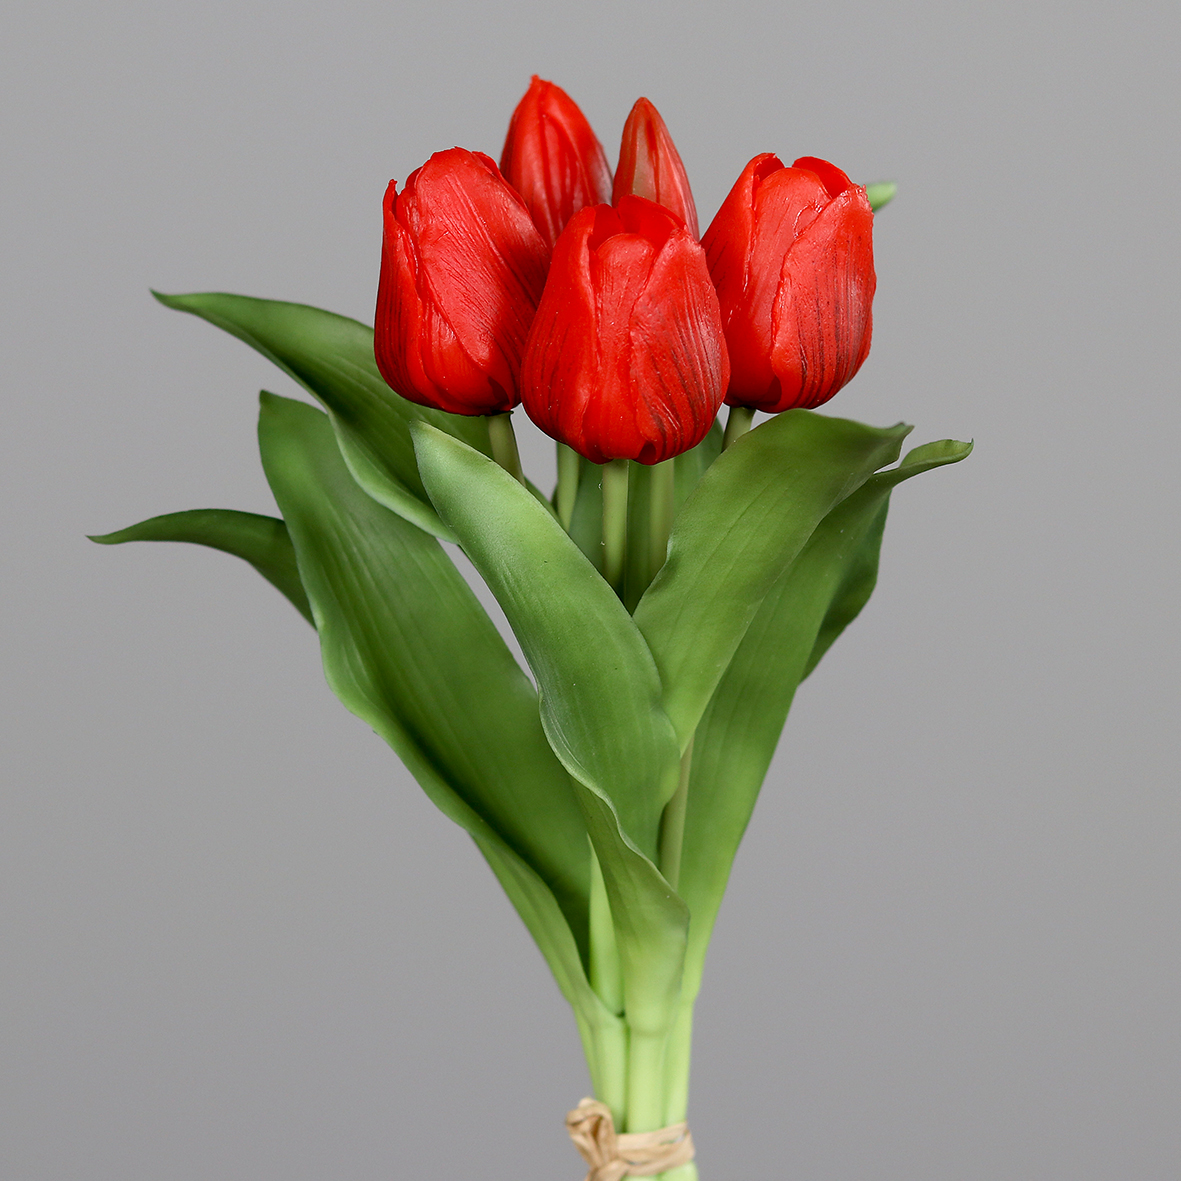 Tulpenbund Nature Real Touch 32x20cm rot mit 5 Blüten DP Kunstblumen künstliche Blumen Tulpen Latex